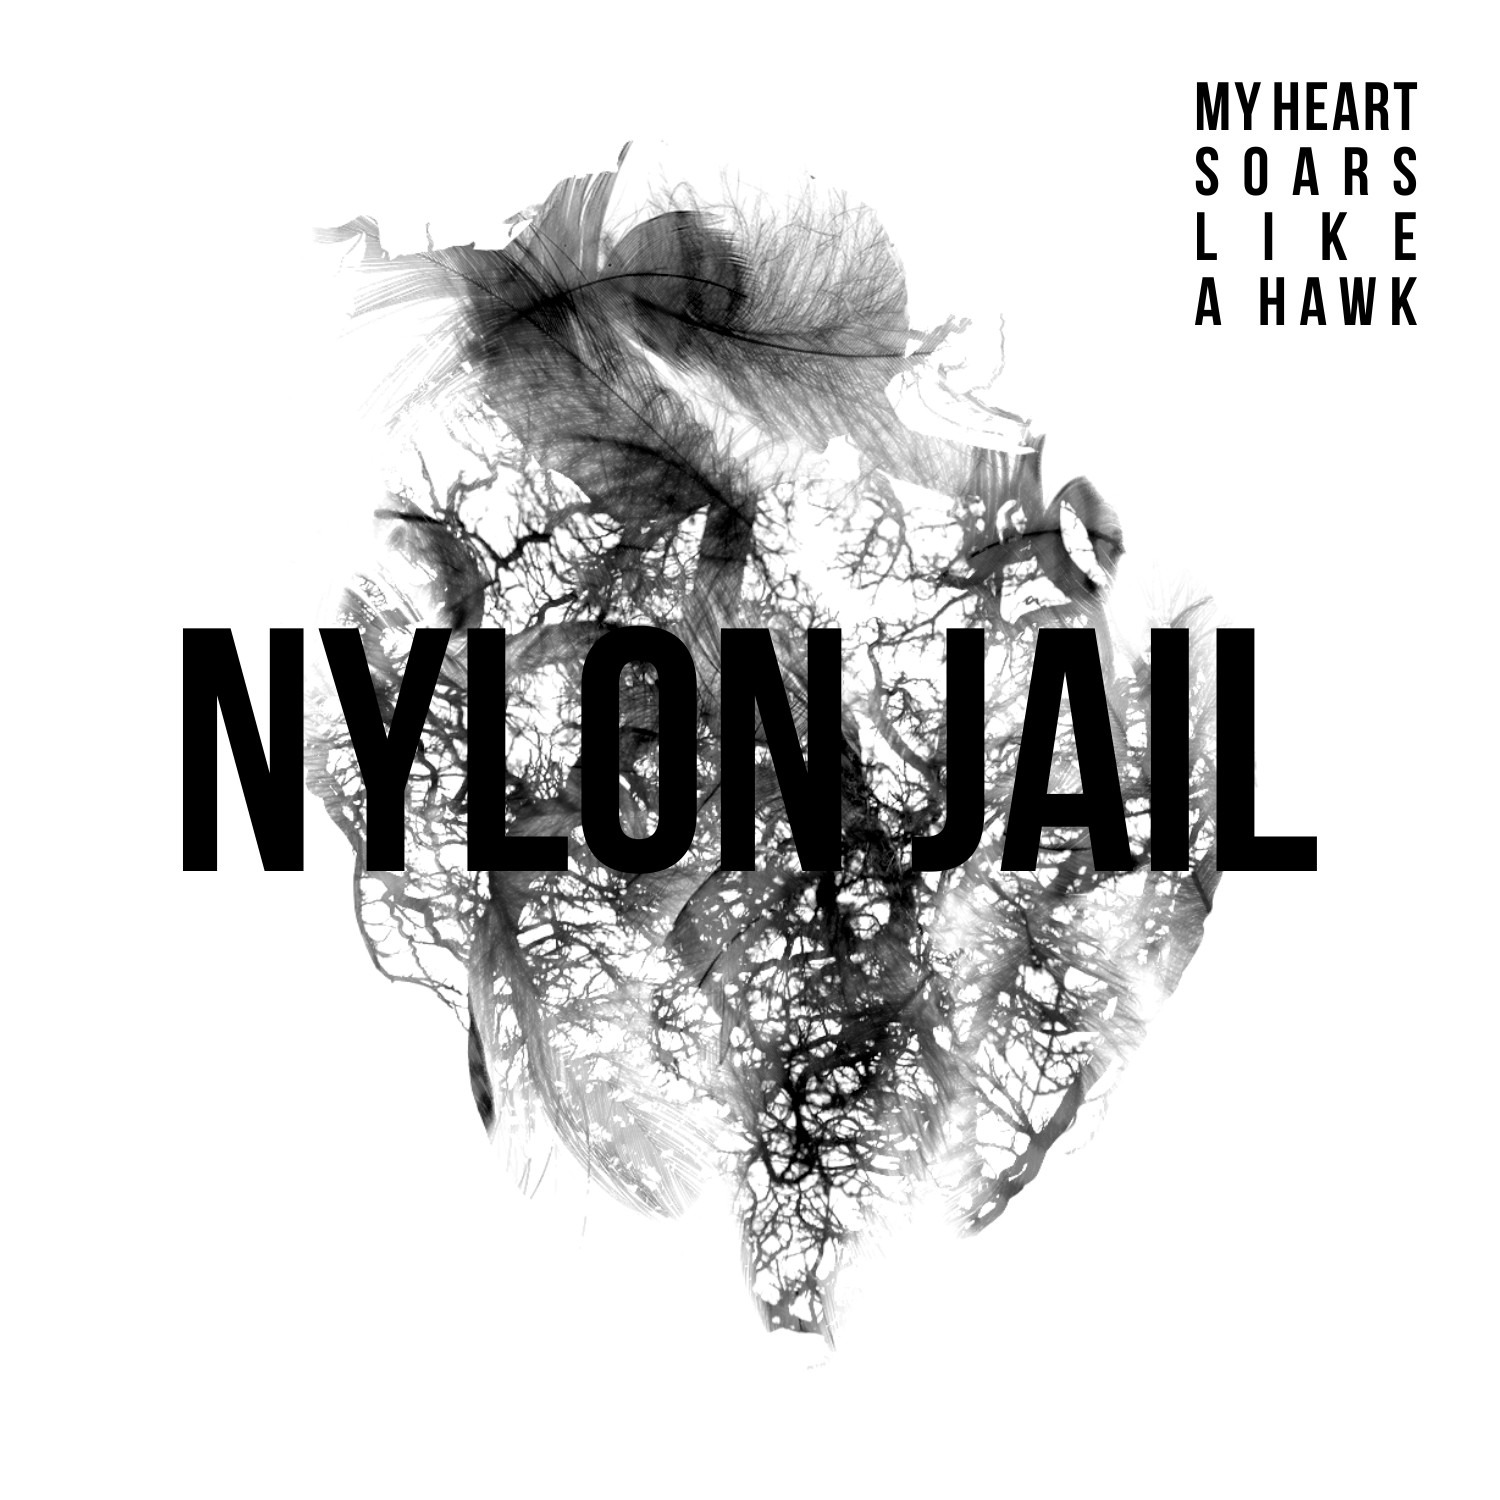 Poslední (ostravský) křest nedávno vydaného alba kapely Nylon Jail se blíží